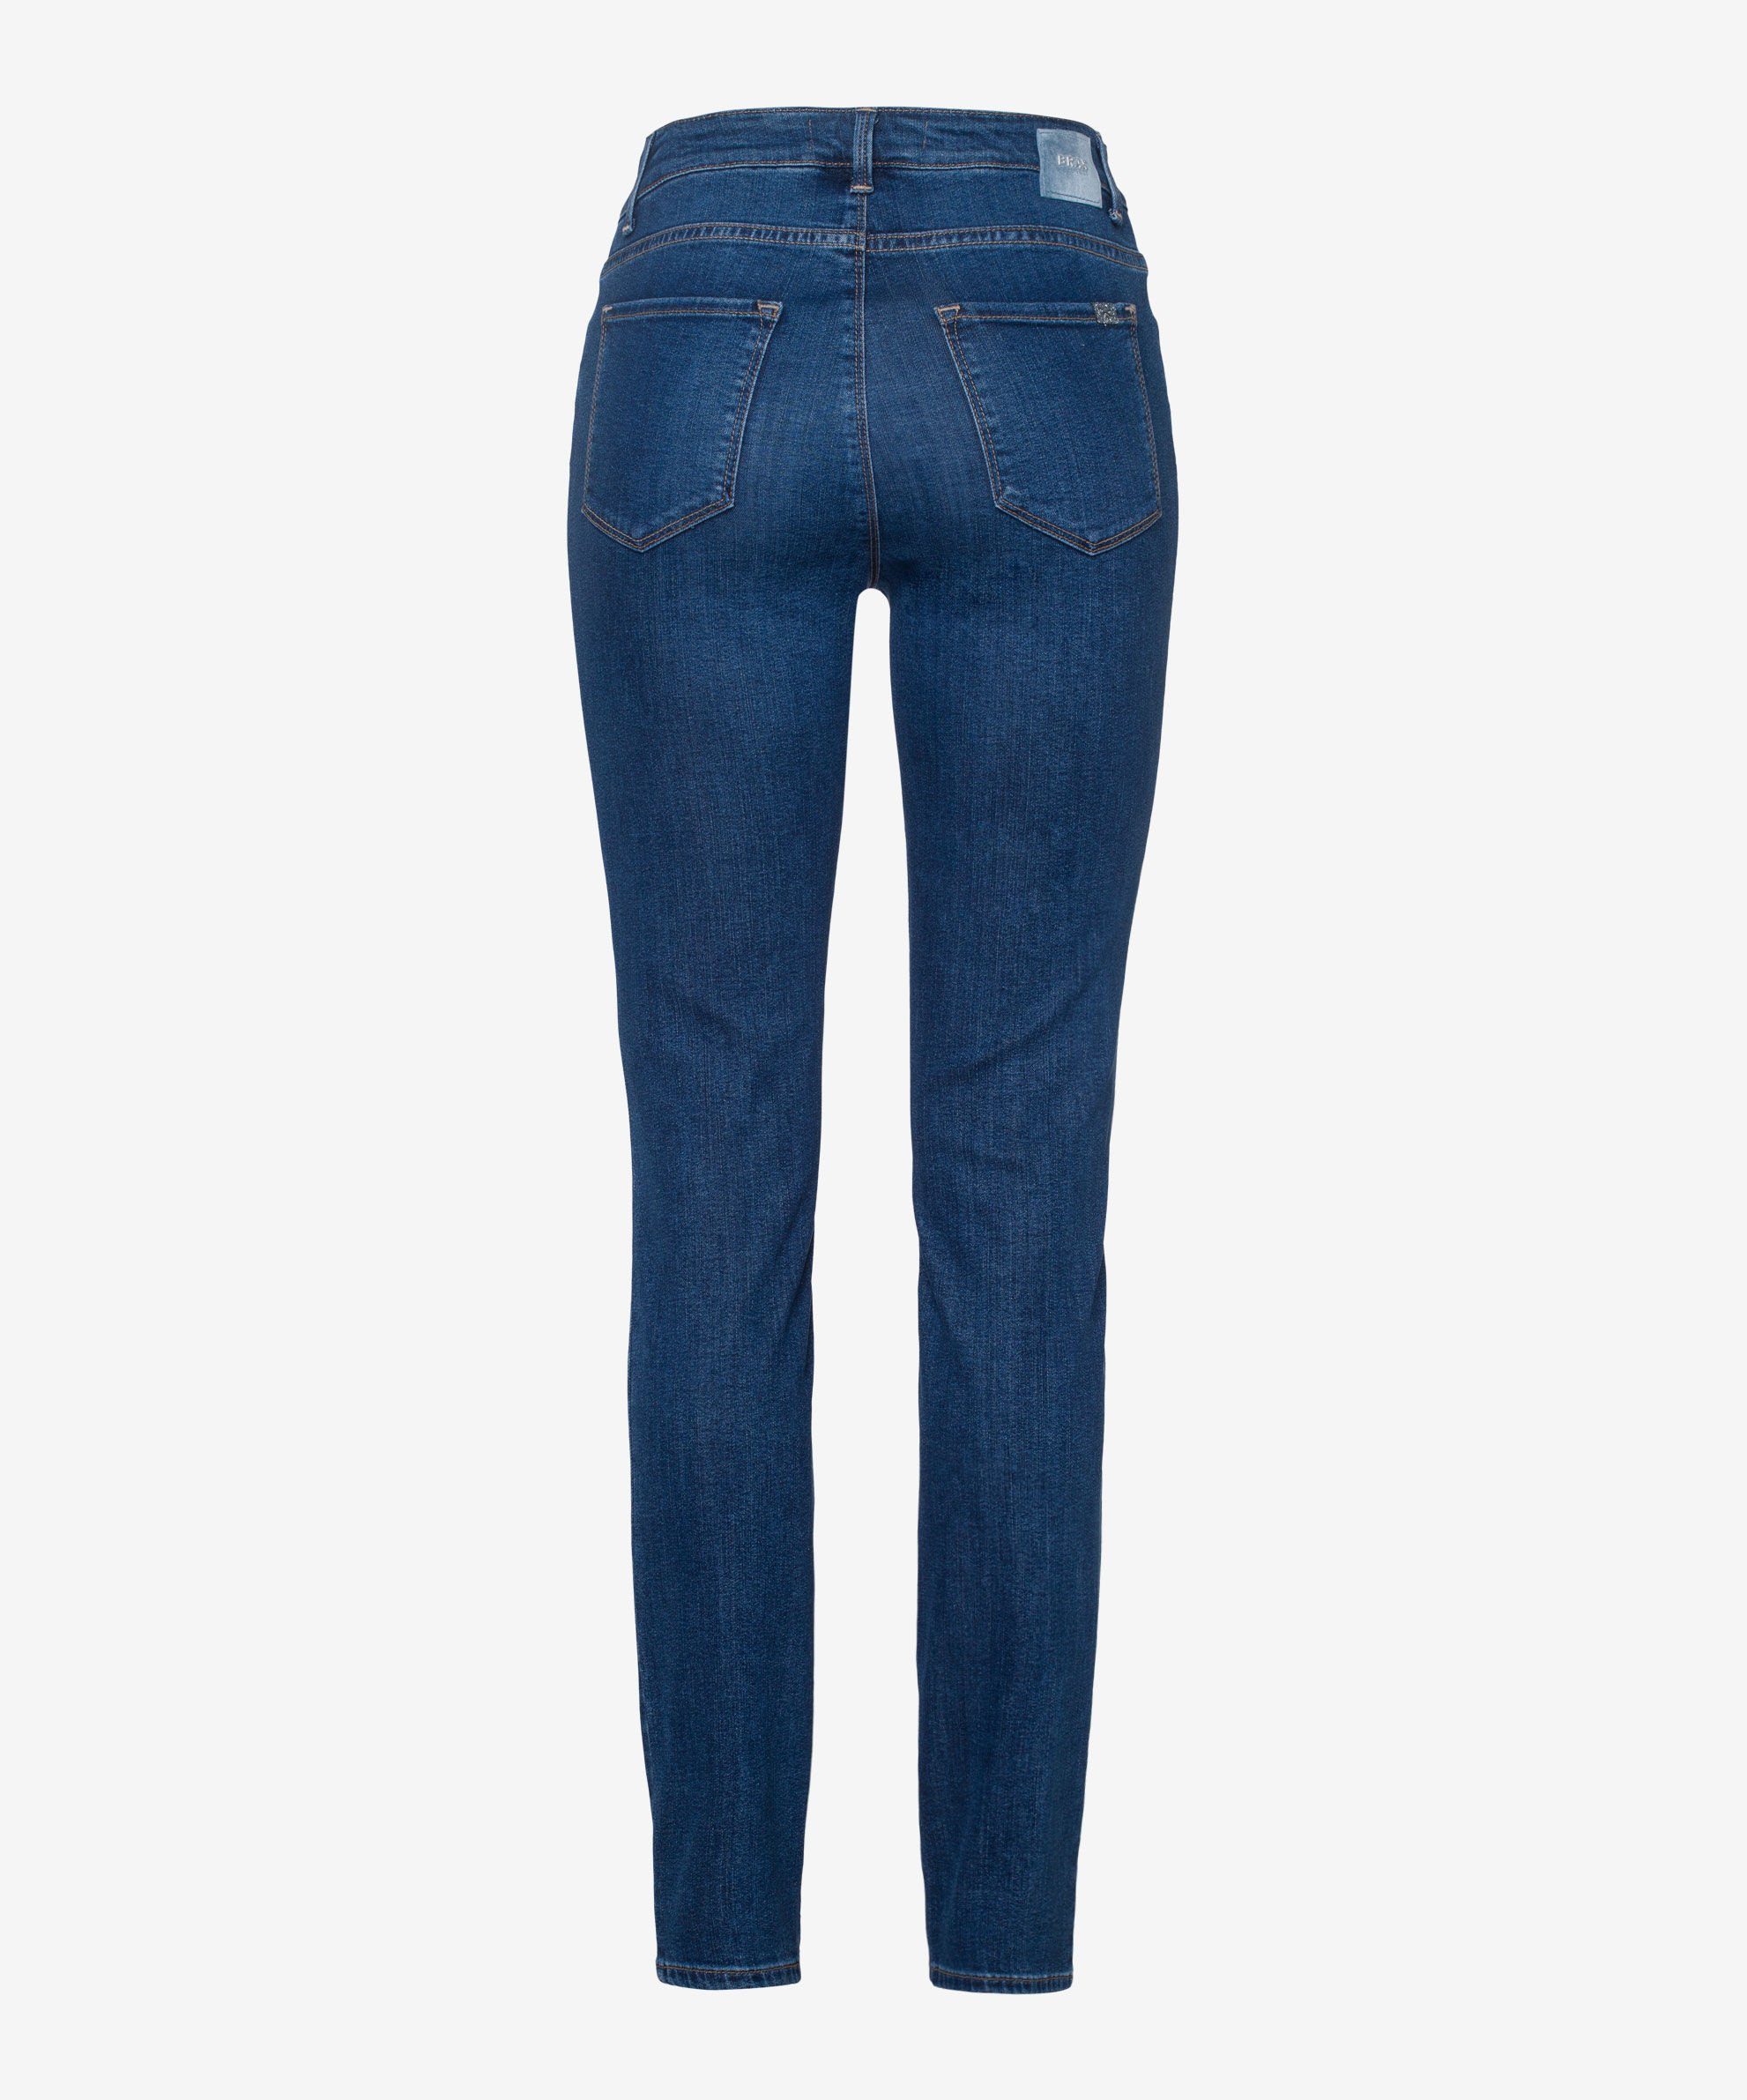 Brax Skinny-fit-Jeans Five-Pocket-Röhrenjeans slightly used regular blue